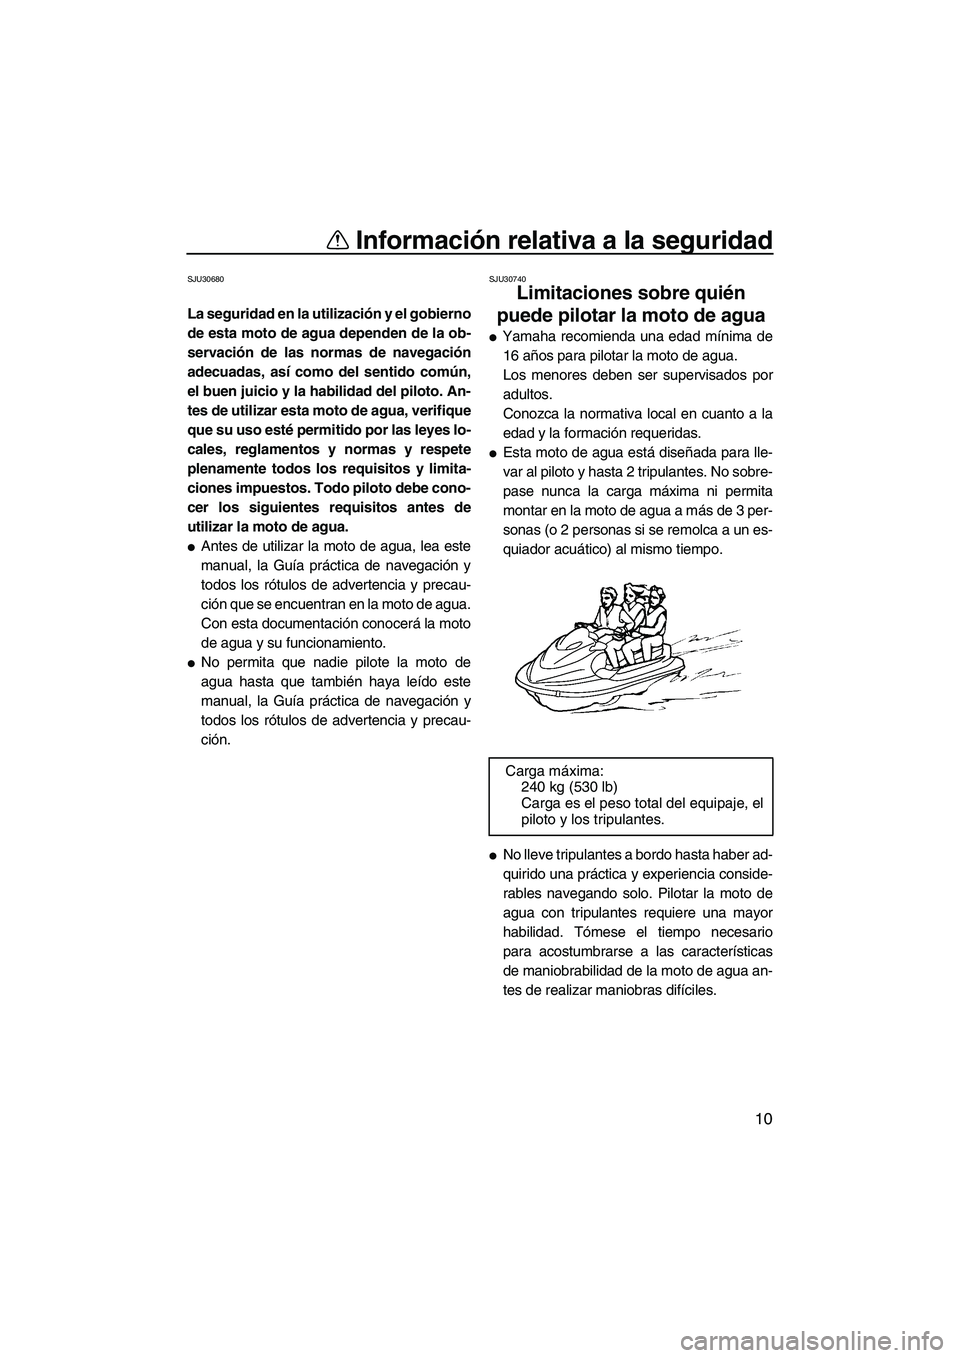 YAMAHA FX HO CRUISER 2007  Manuale de Empleo (in Spanish) Información relativa a la seguridad
10
SJU30680
La seguridad en la utilización y el gobierno
de esta moto de agua dependen de la ob-
servación de las normas de navegación
adecuadas, así como del 